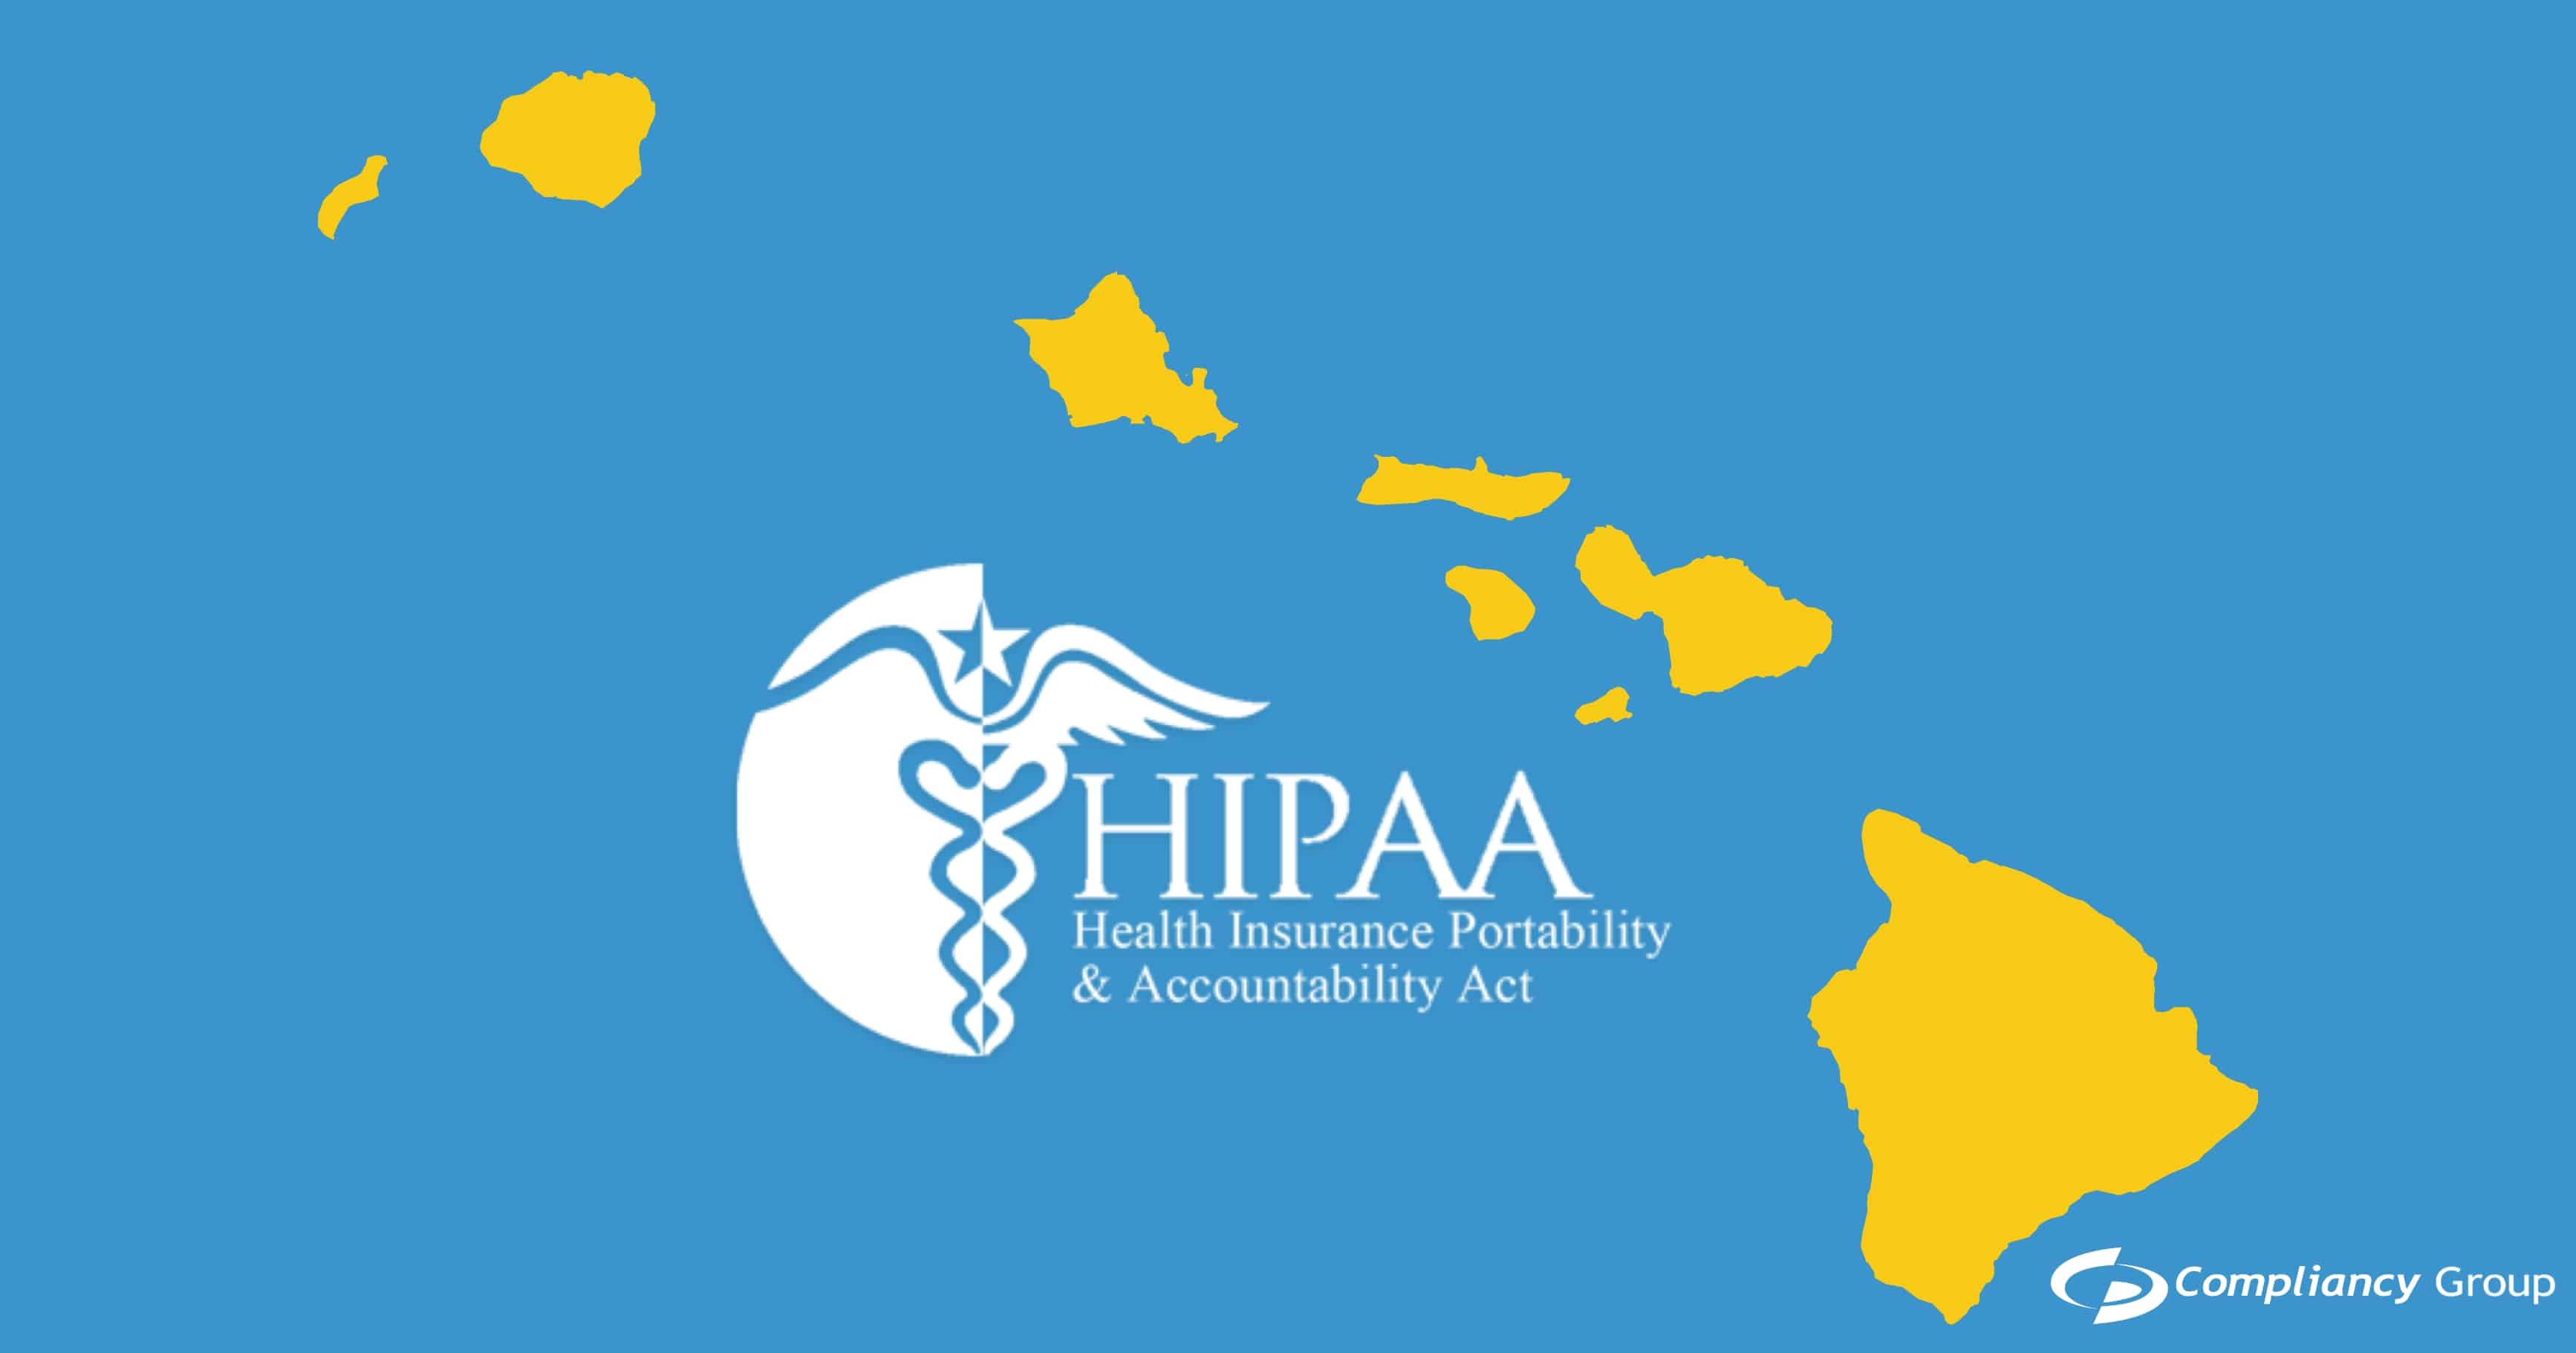 Hawaii HIPAA Law